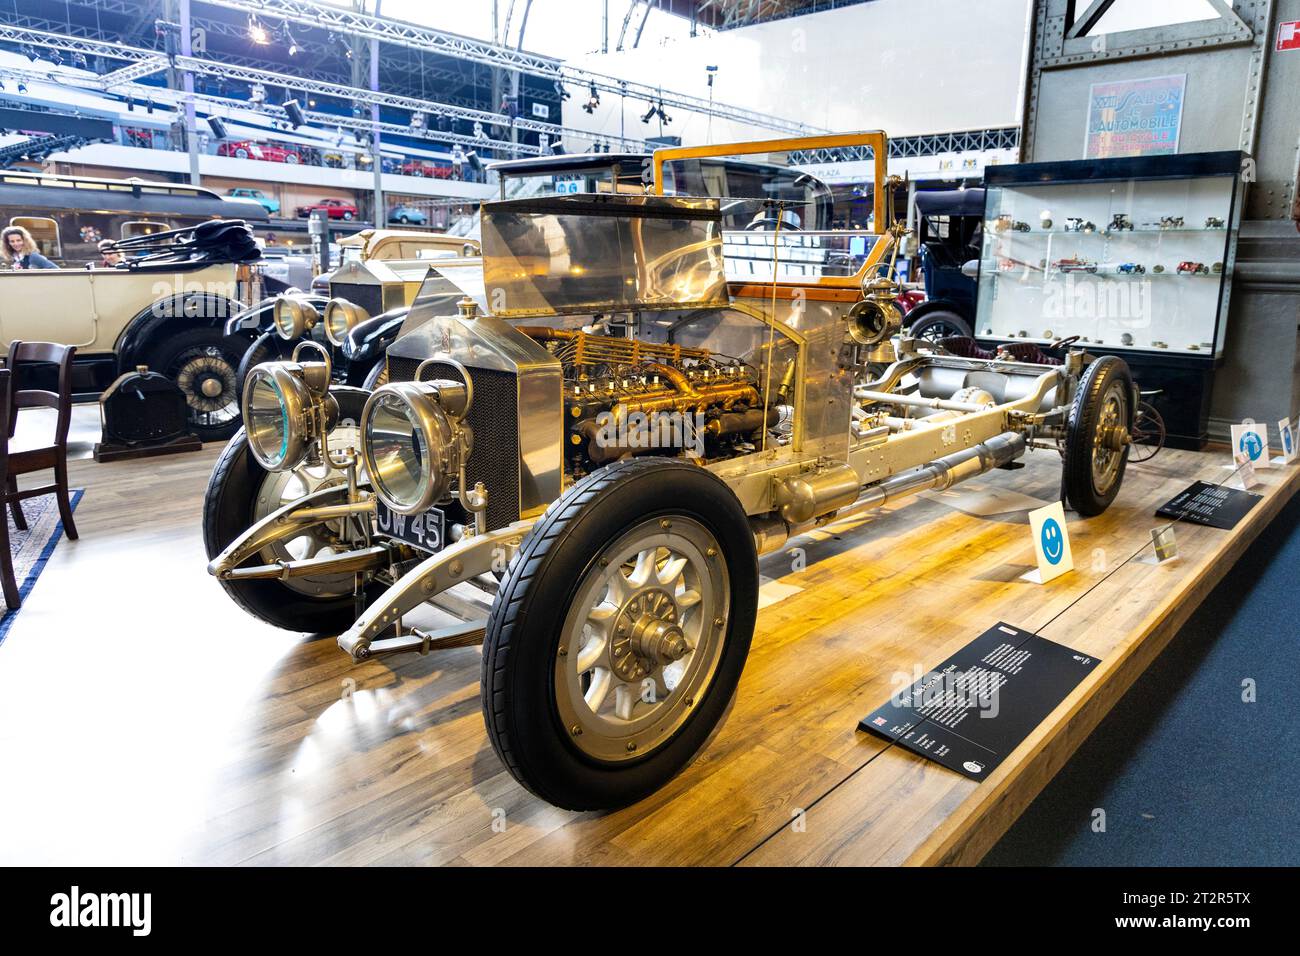 Châssis Rolls-Royce Silver Ghost 1911 prêt à être équipé de carrosseries, musée Autoworld, Bruxelles, Belgique Banque D'Images